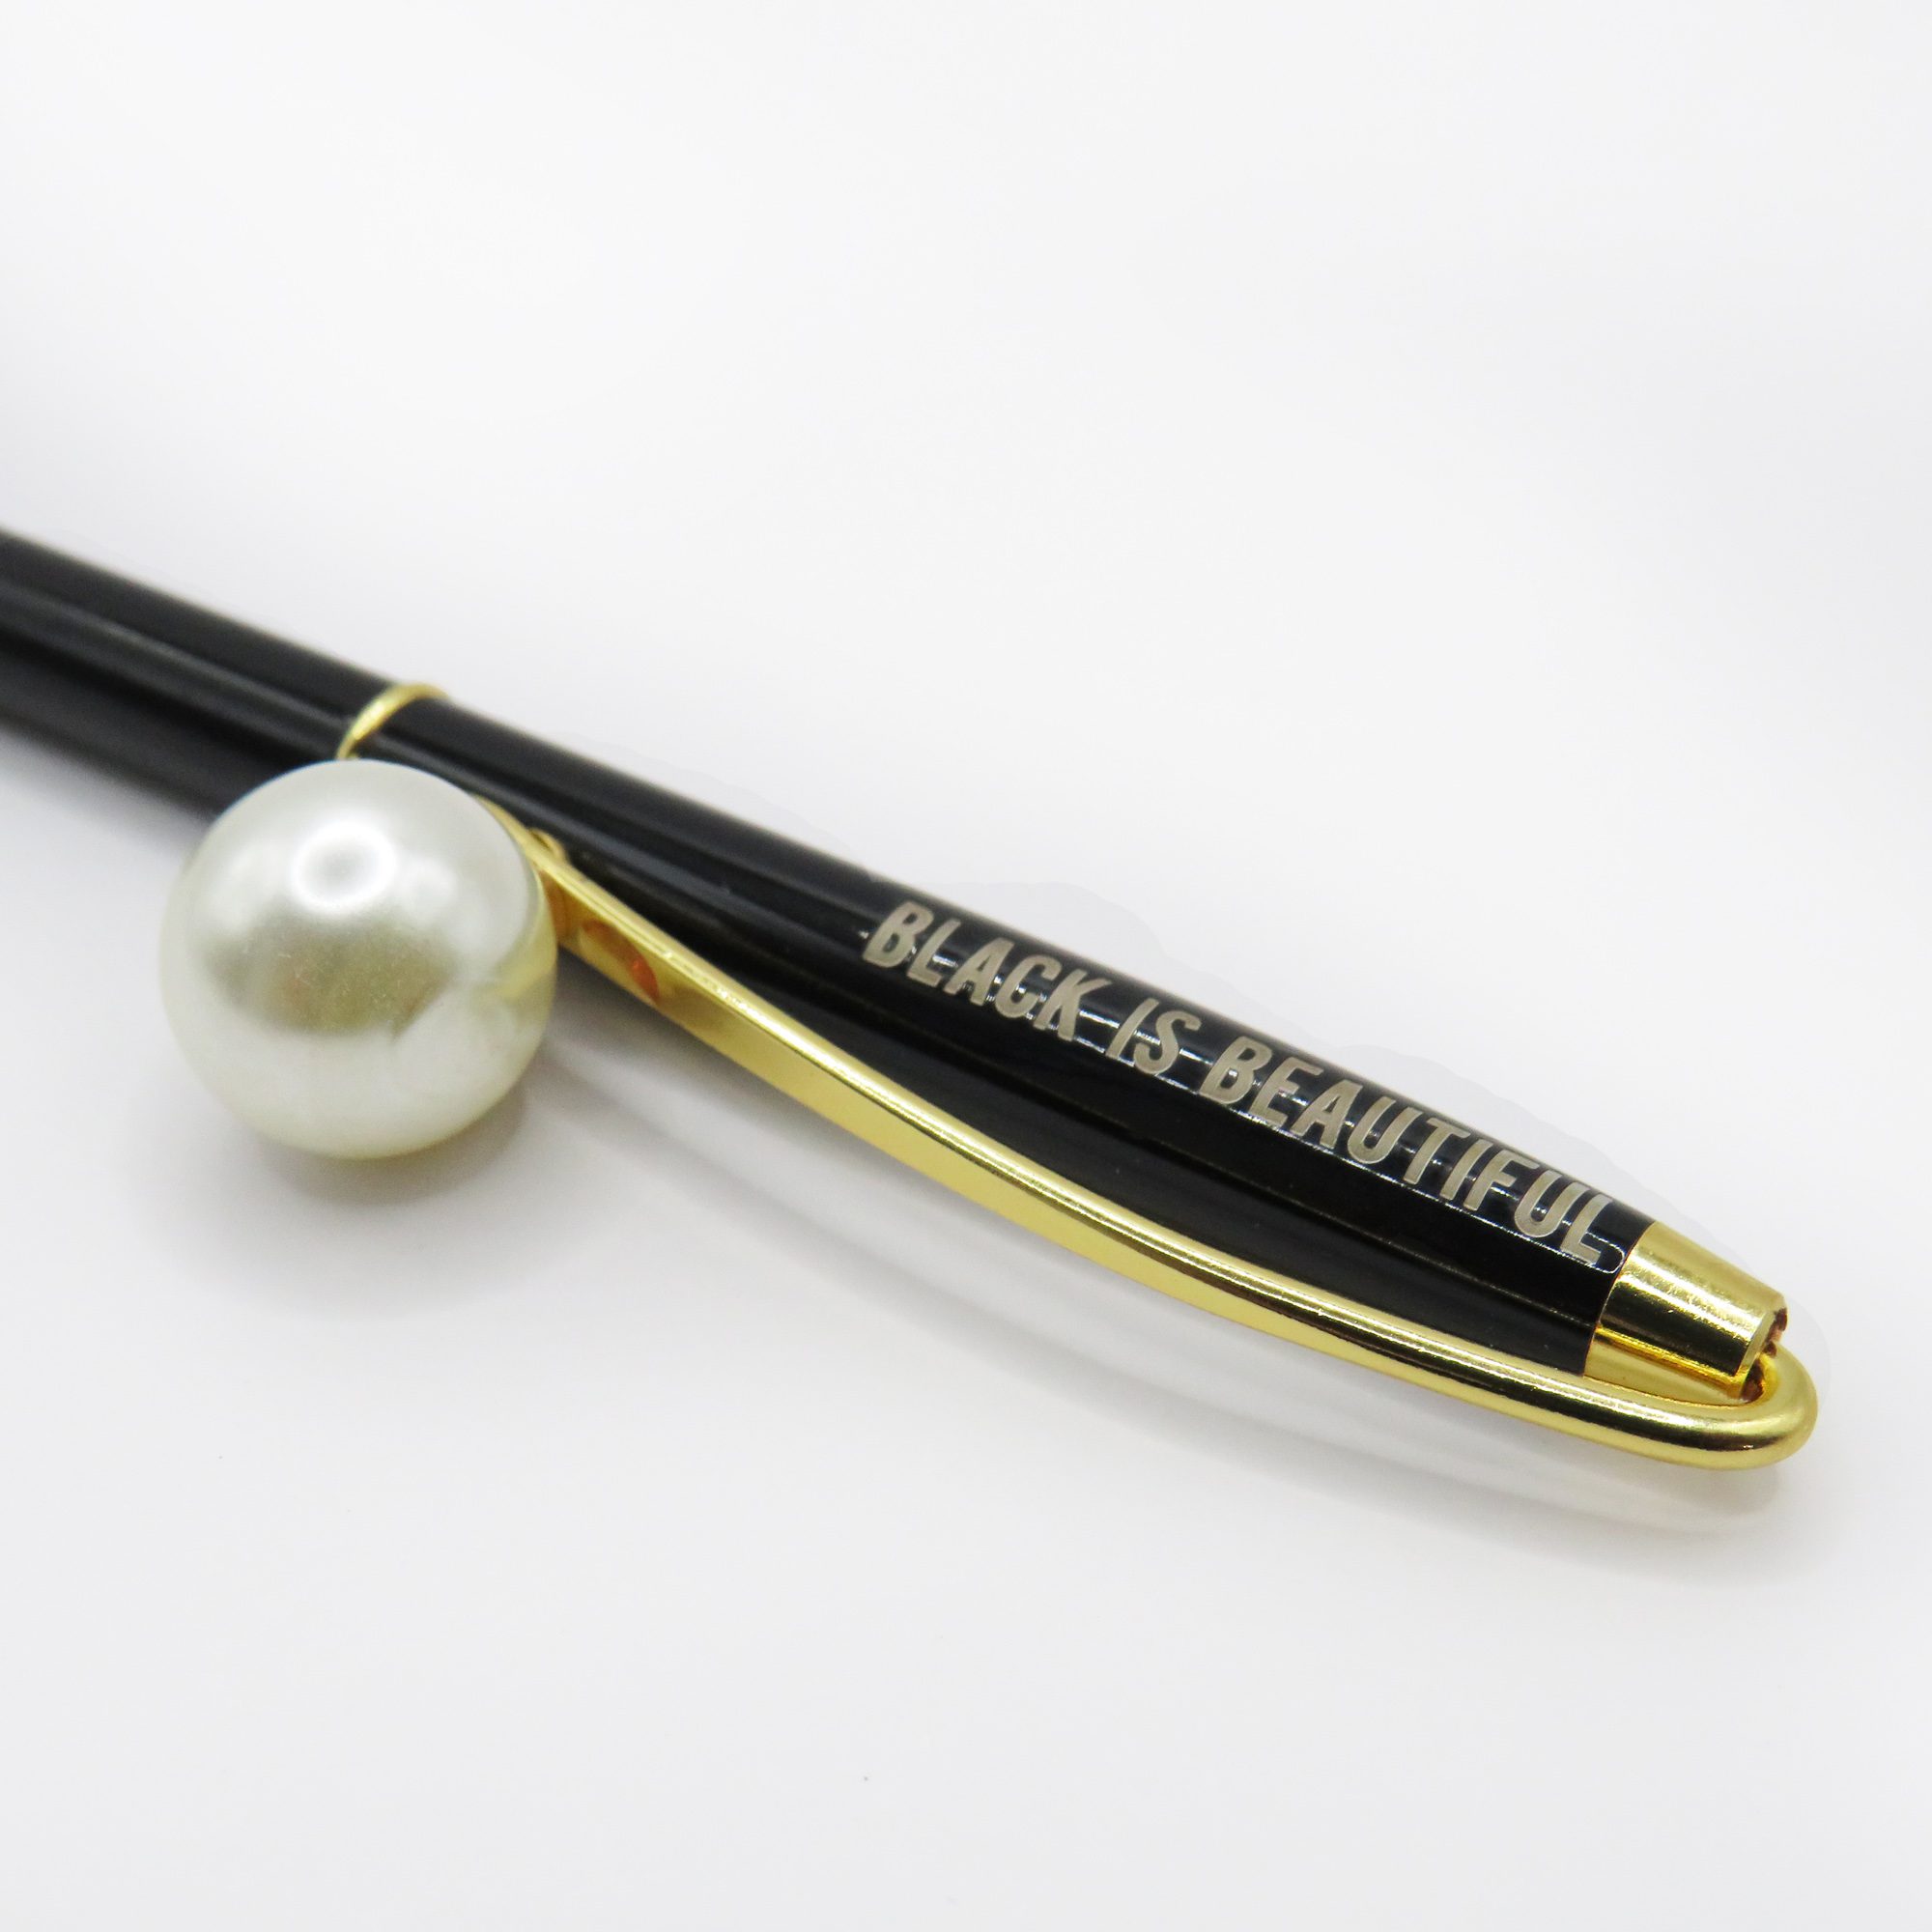 Black is Beautiful – Luxury Pen